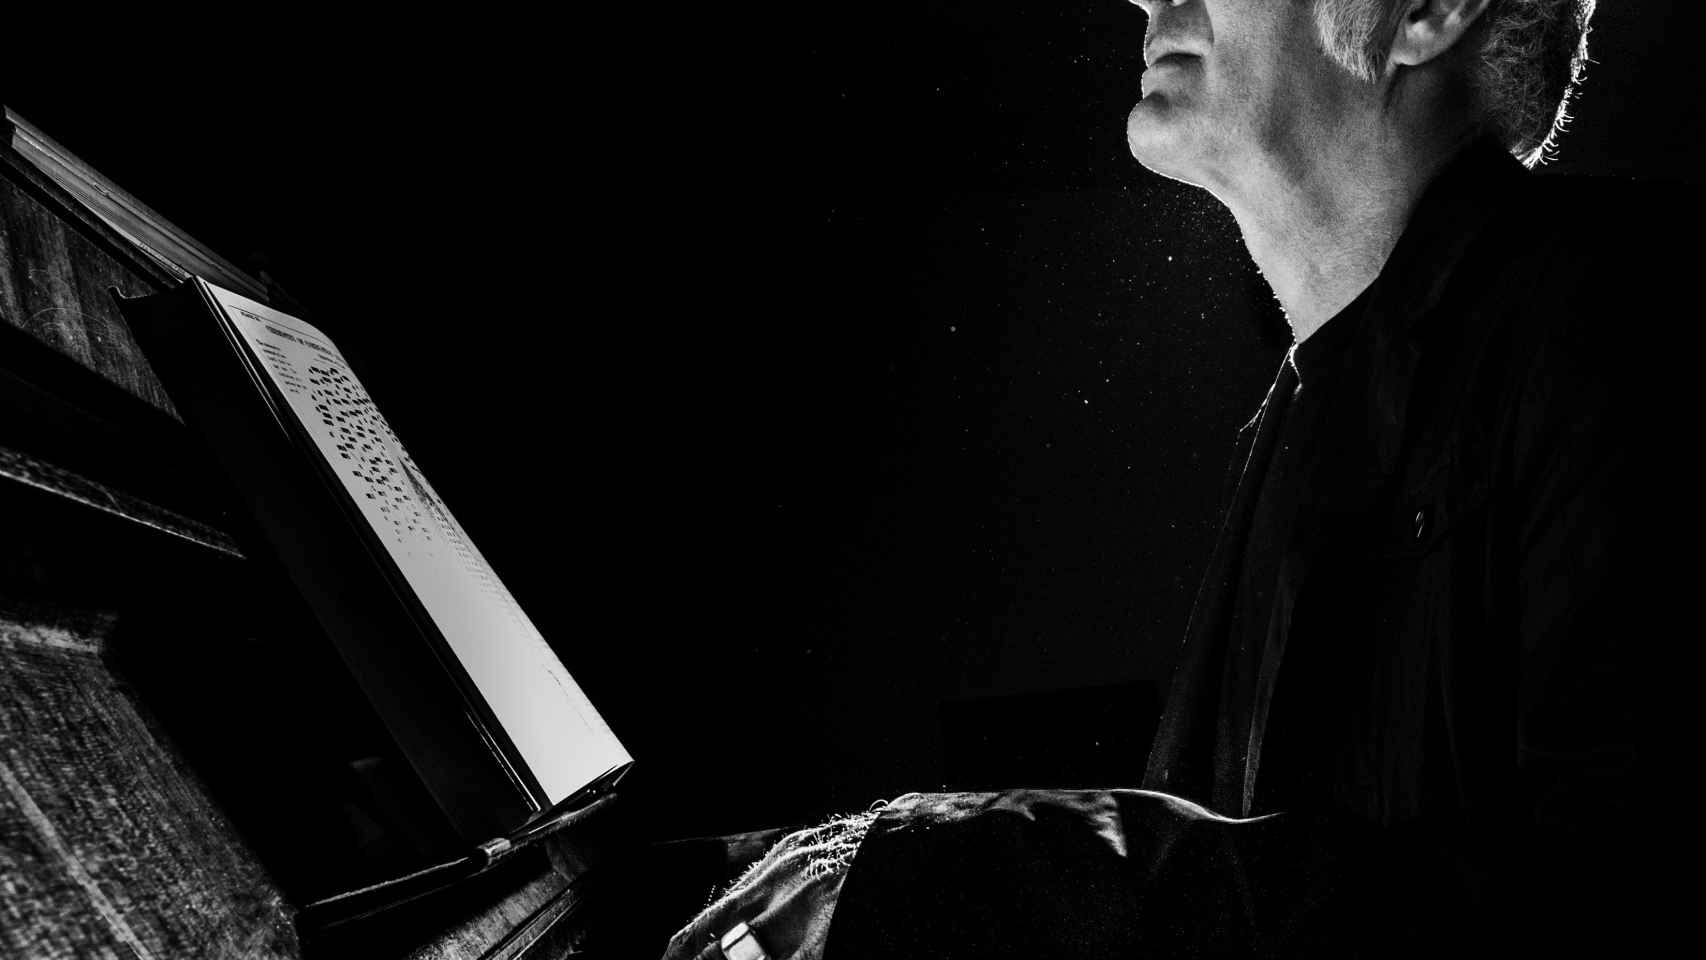 El pianista Ludovico Einaudi, en un concierto / CG